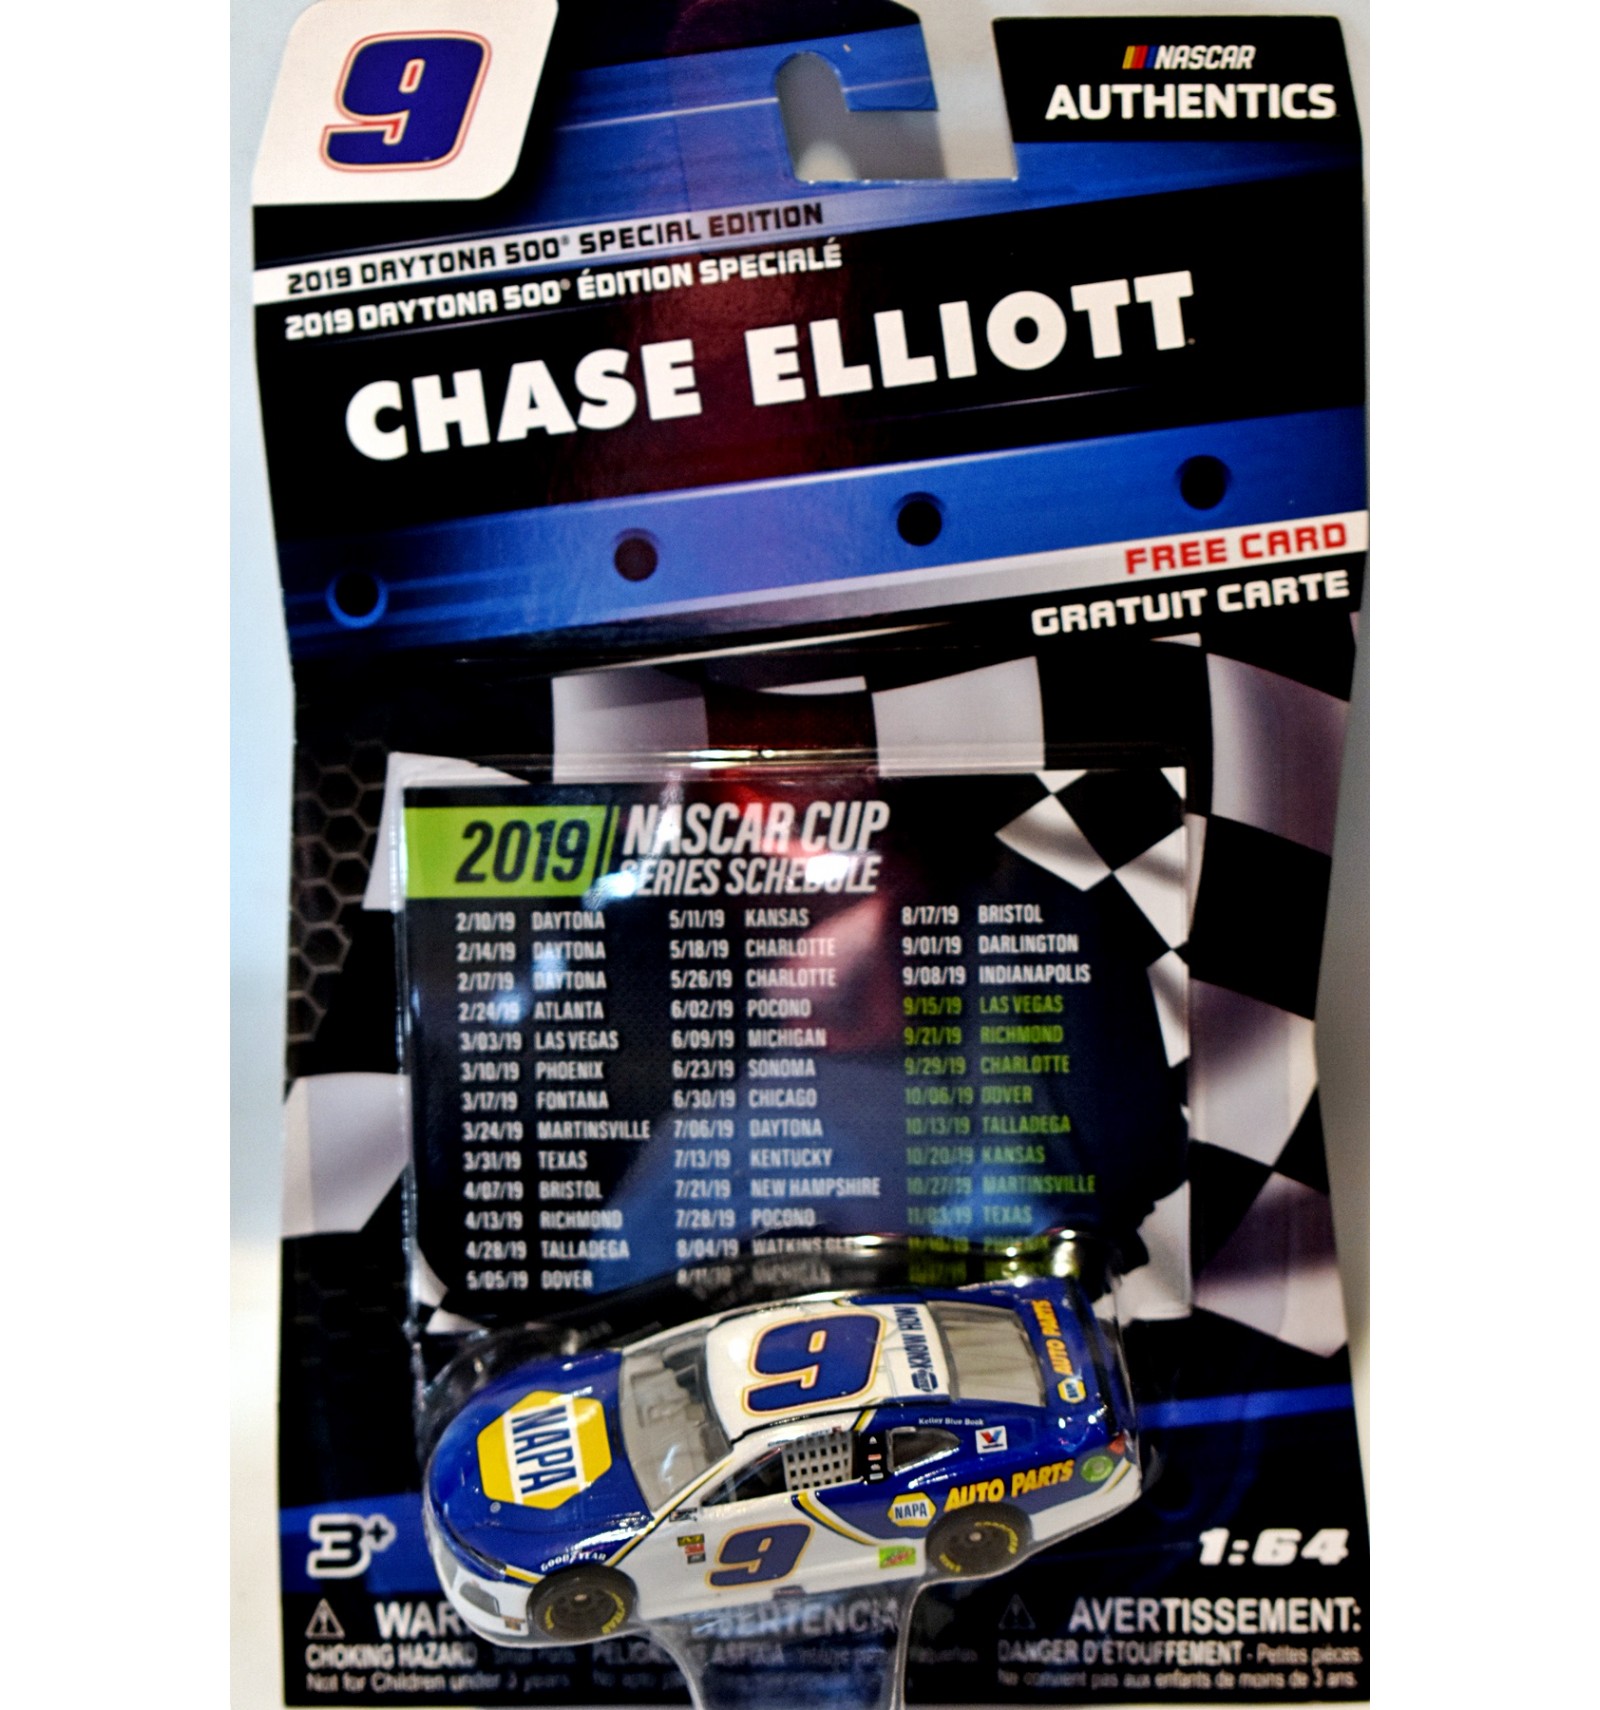 2019 Daytona 500 Special Edition Chase Elliott #9 Nascar Authentics 1:64 